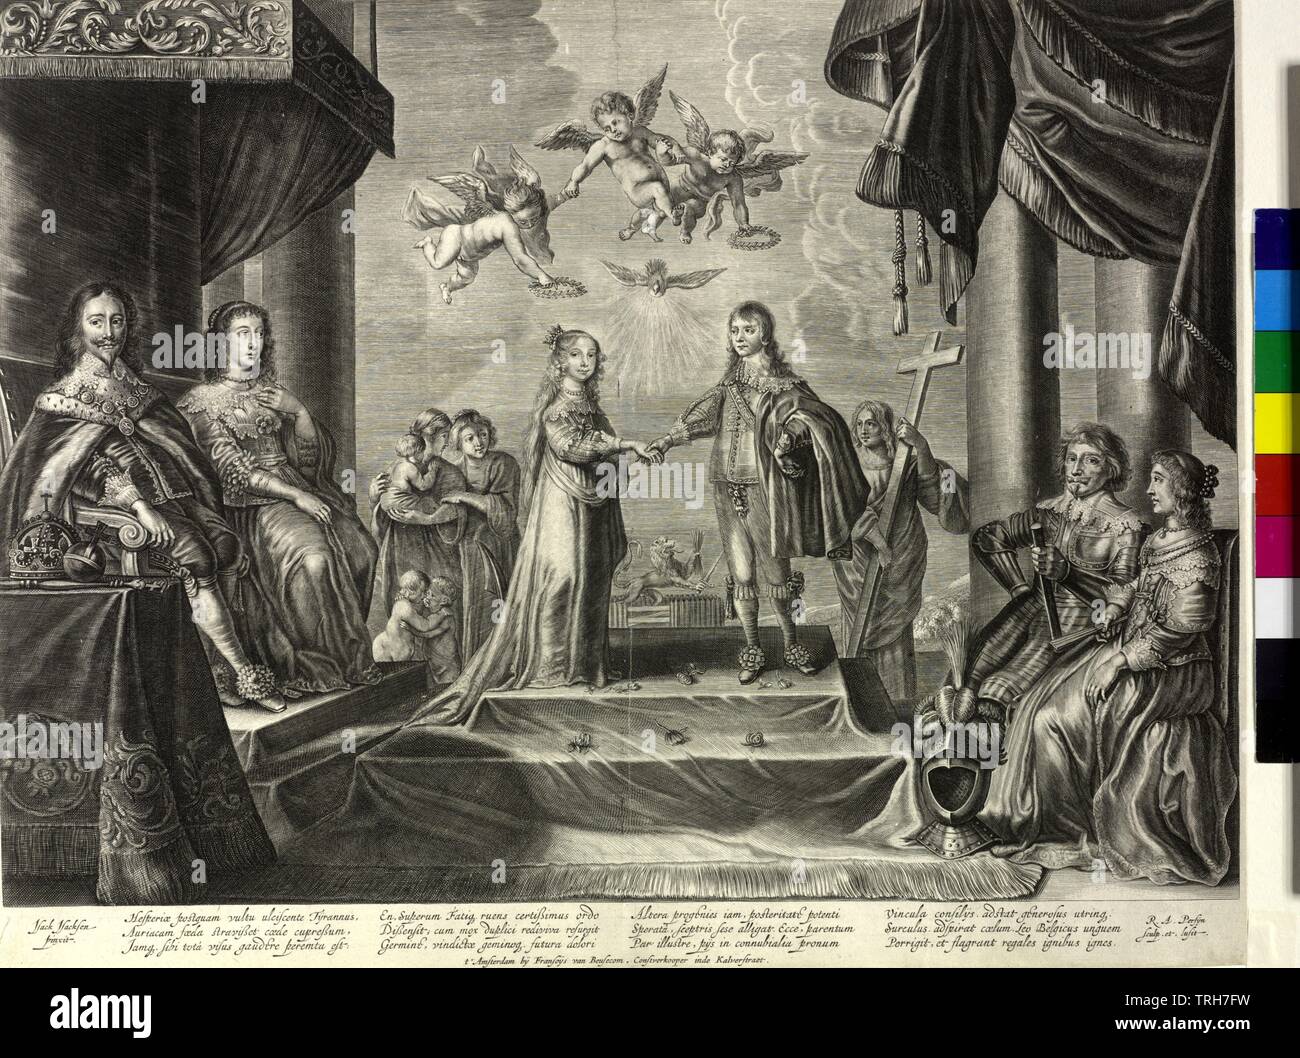 Wilhelm II., Prinz von Oranien, Graf von Nassau, allegorischen Szene auf seiner Hochzeit mit Maria Stuart, Prinzessin von England (12. Mai 1641): Das Brautpaar (er 15, sie ist 10 Jahre jung und etwas älter) in der Mitte auf einem Doppel - werfen, abdecken, mit Blumen streuen Estrade stehend, einander die rechte Hand reichte, oberhalb des Heiligen Geistes in Gestalt einer ausgedehnteren gehörlose Person und drei geflügelte Genien schweben, zwei von ihnen halten zwei lorbeerkranz oberhalb des Paares, Maria stehen auf der rechten Seite von Wilhelm, weil ihr die Note eines Ki, Additional-Rights - Clearance-Info - Not-Available Stockfoto